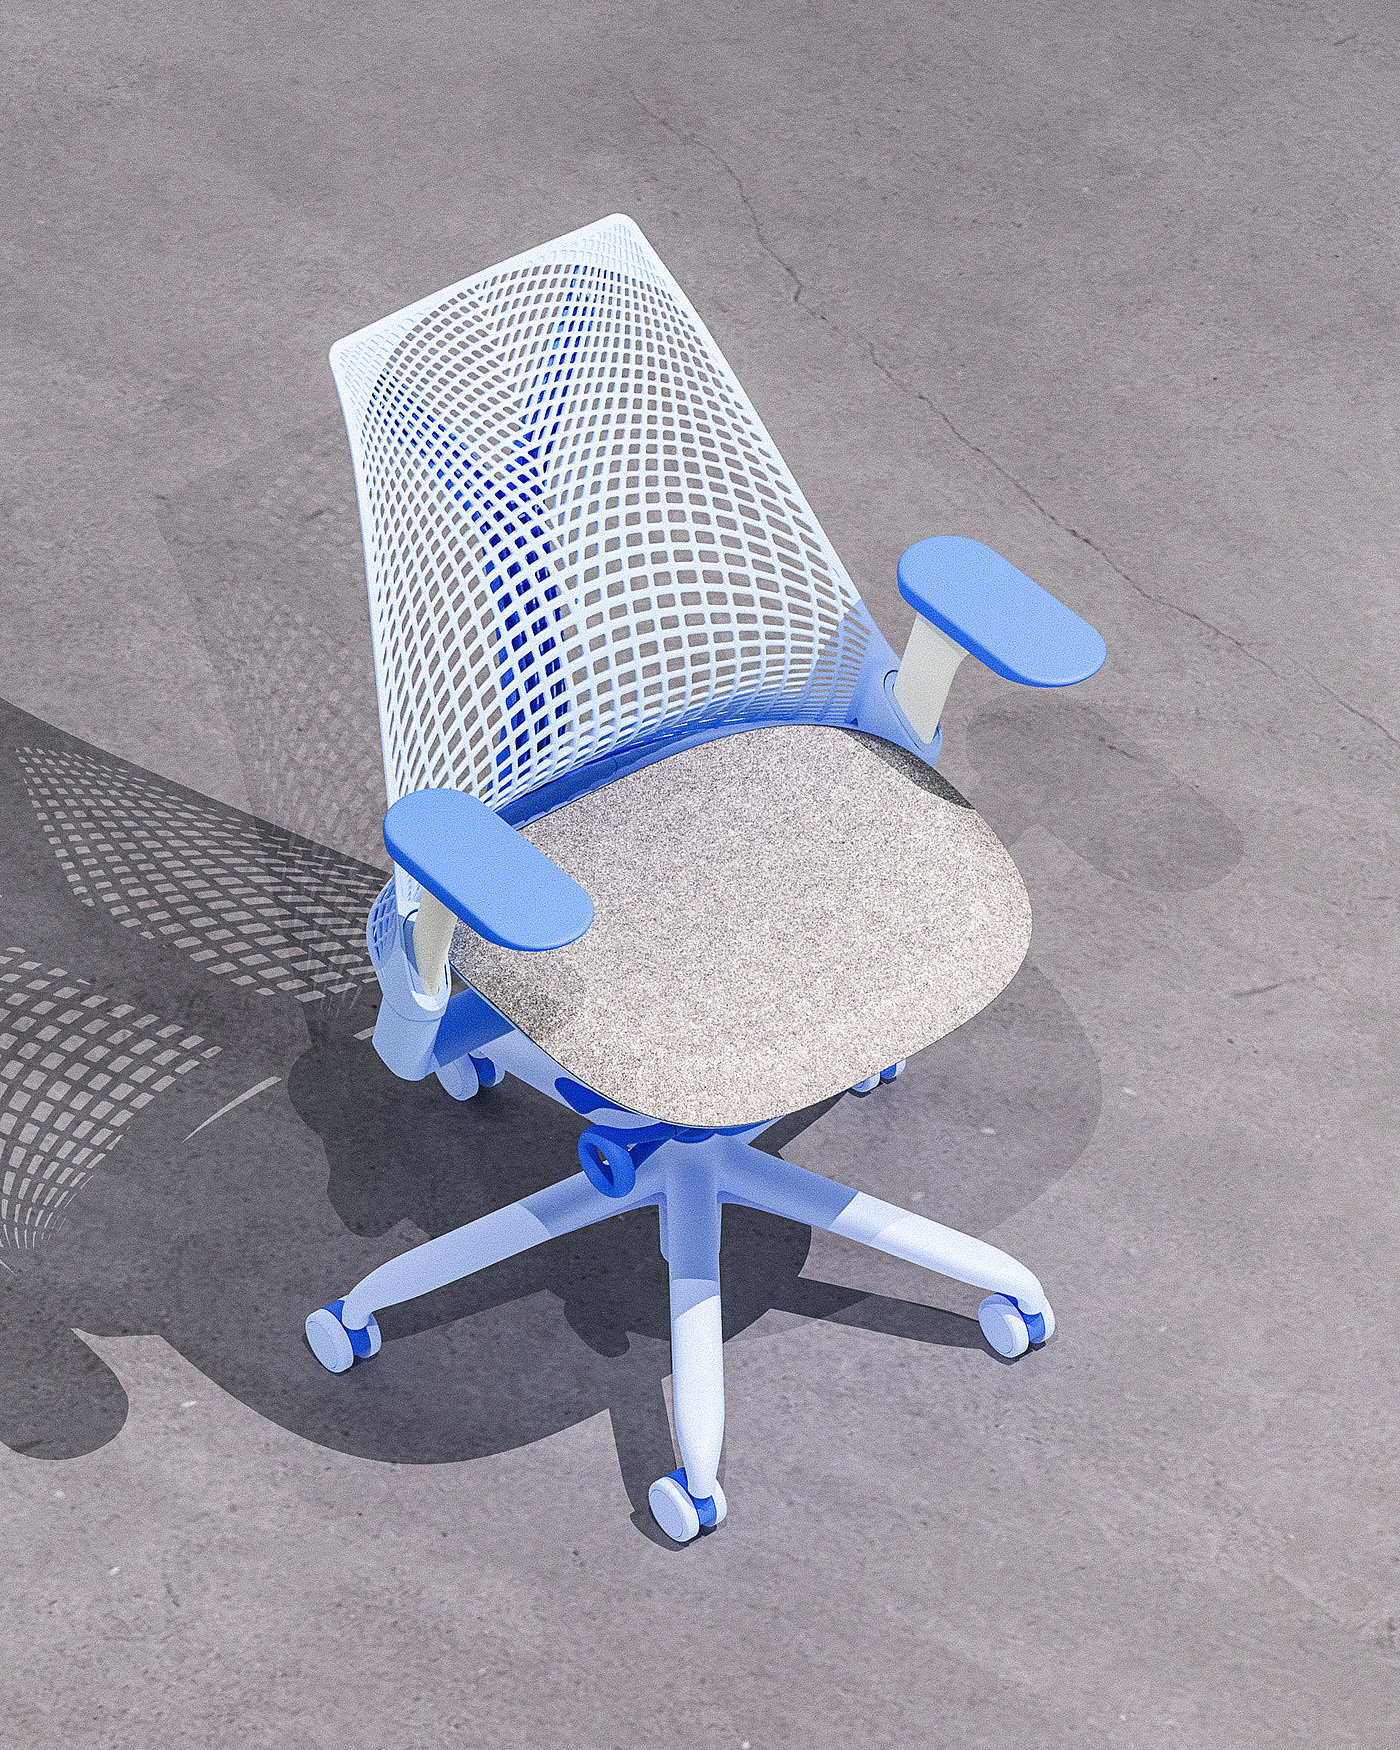 应用程序，ai，椅子，cmf设计，设计工具，产品设计，Sayl 椅子，